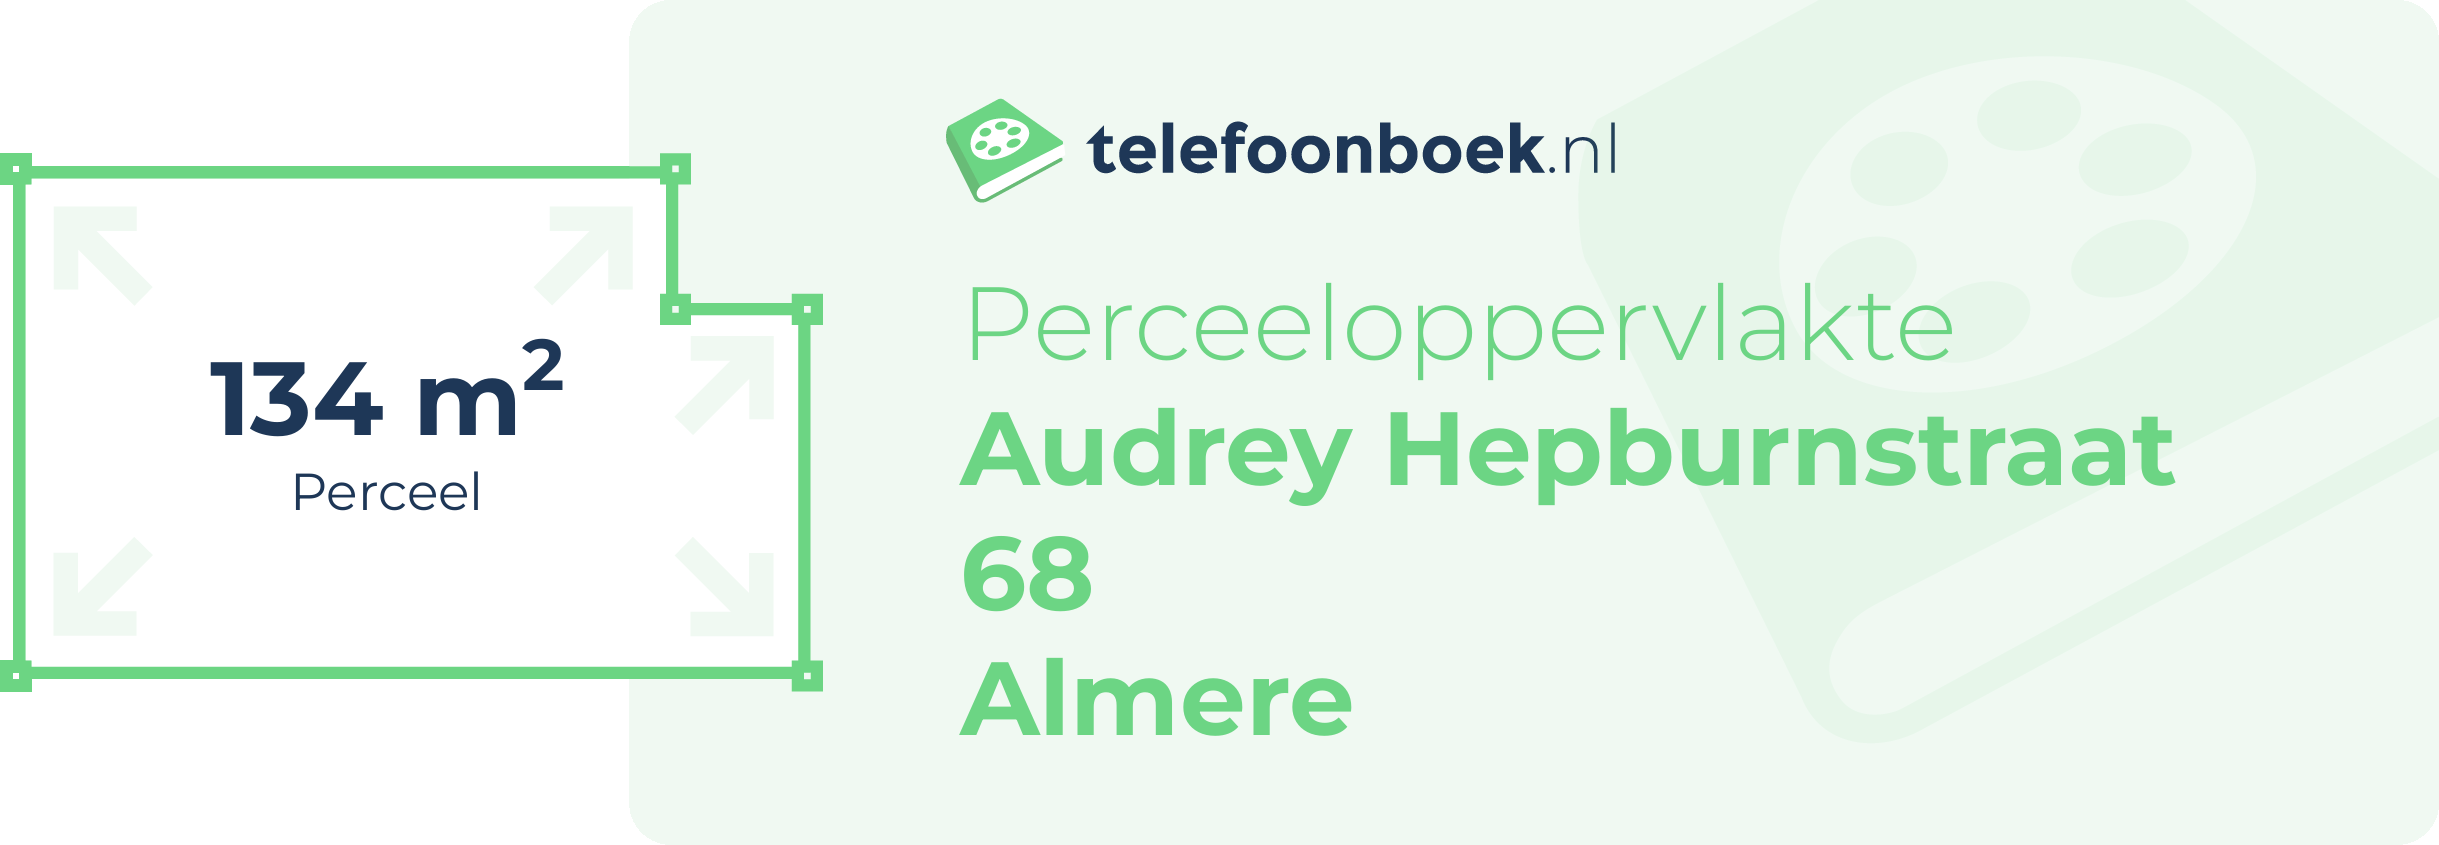 Perceeloppervlakte Audrey Hepburnstraat 68 Almere